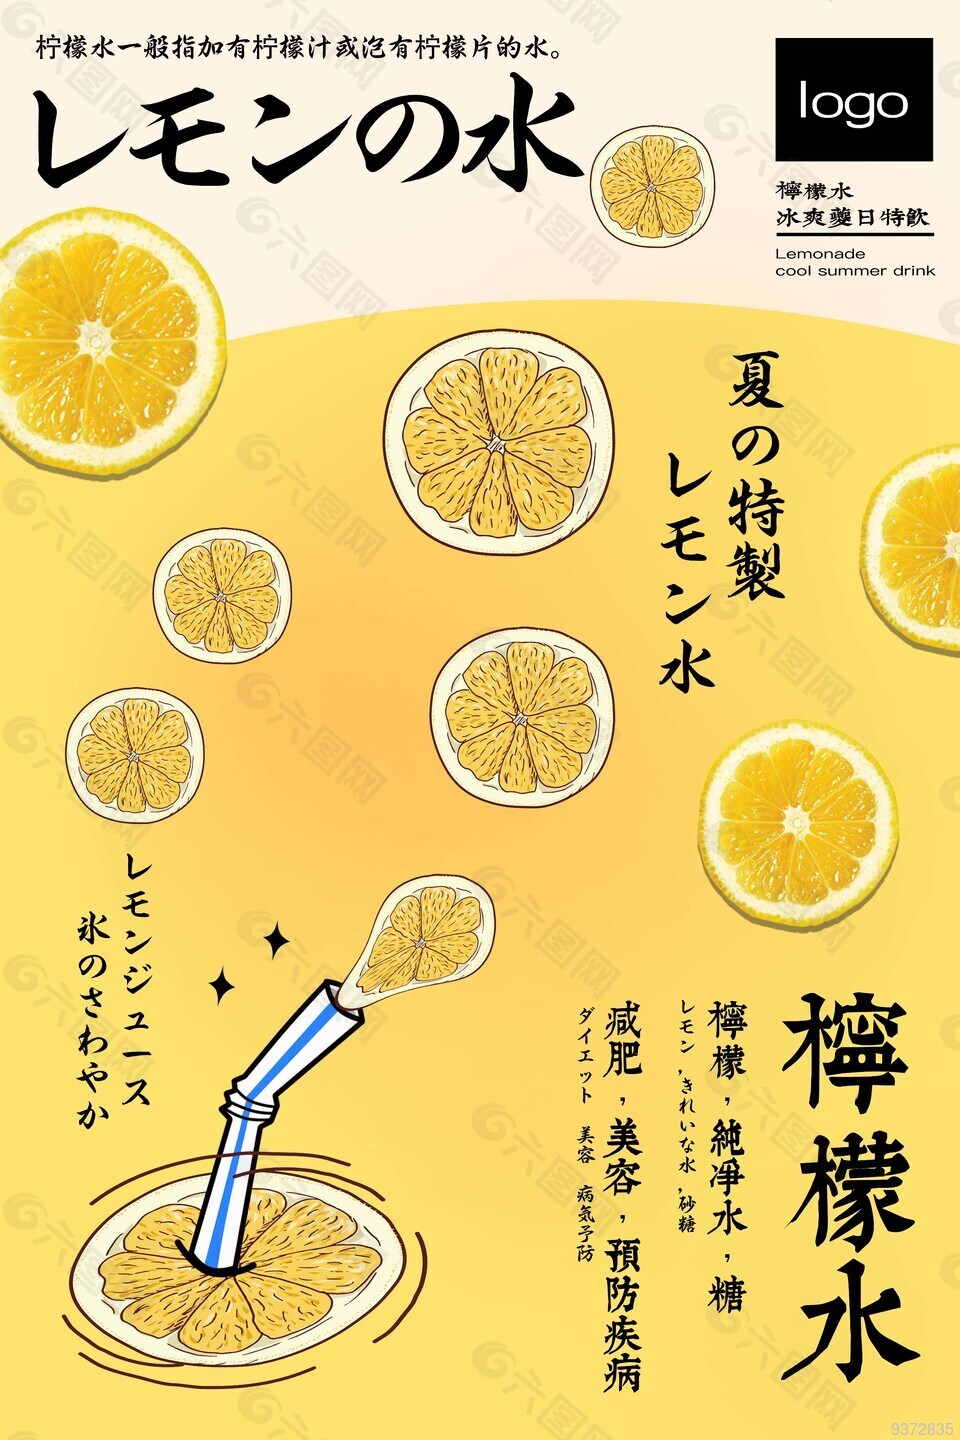 夏季特制柠檬水